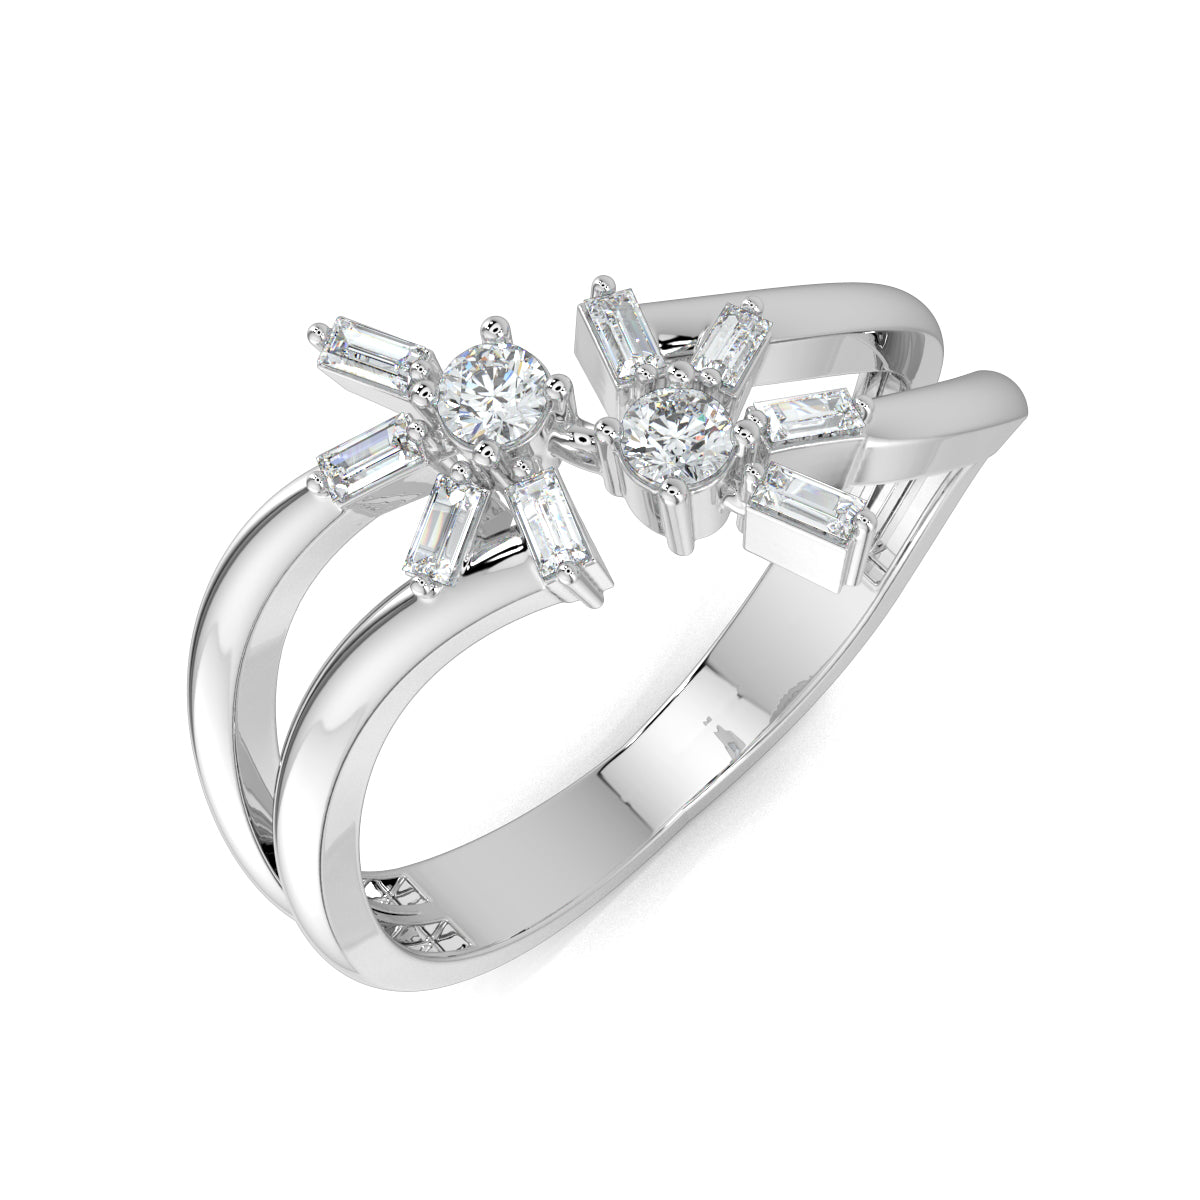 White Gold, Diamond Ring, Natura diamond ring, Lab-grown diamond ring, Mystic Flourish Diamond Ring, everyday diamond ring, split shank diamond ring, floral diamond ring, sustainable diamond jewelry, round diamond, baguette diamond, elegant diamond ring, enchanting diamond ring